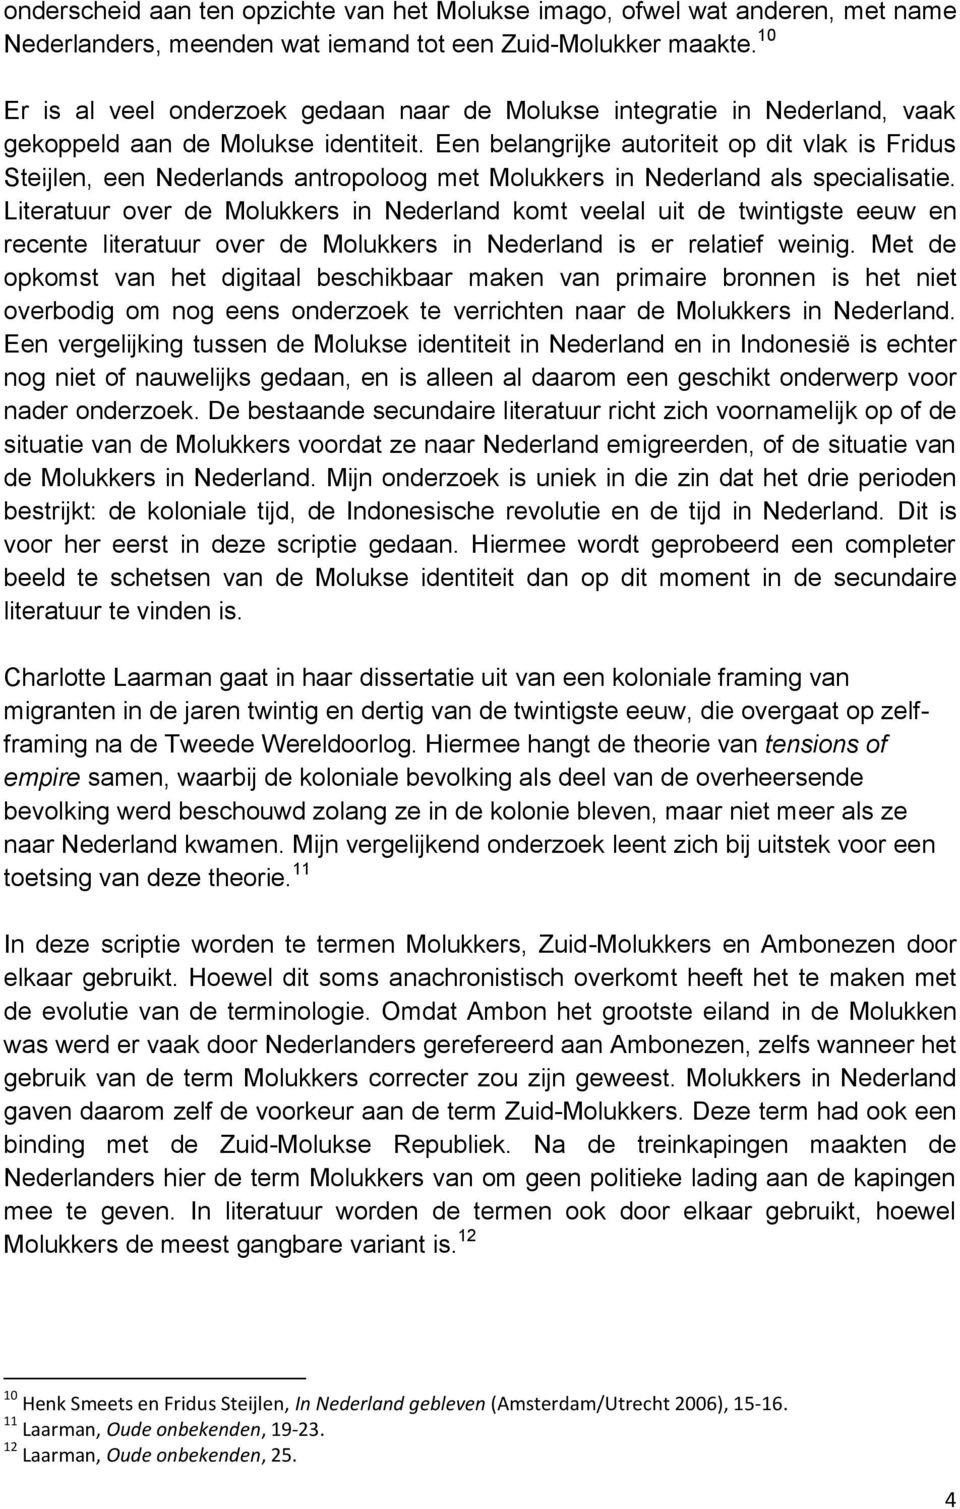 Een belangrijke autoriteit op dit vlak is Fridus Steijlen, een Nederlands antropoloog met Molukkers in Nederland als specialisatie.